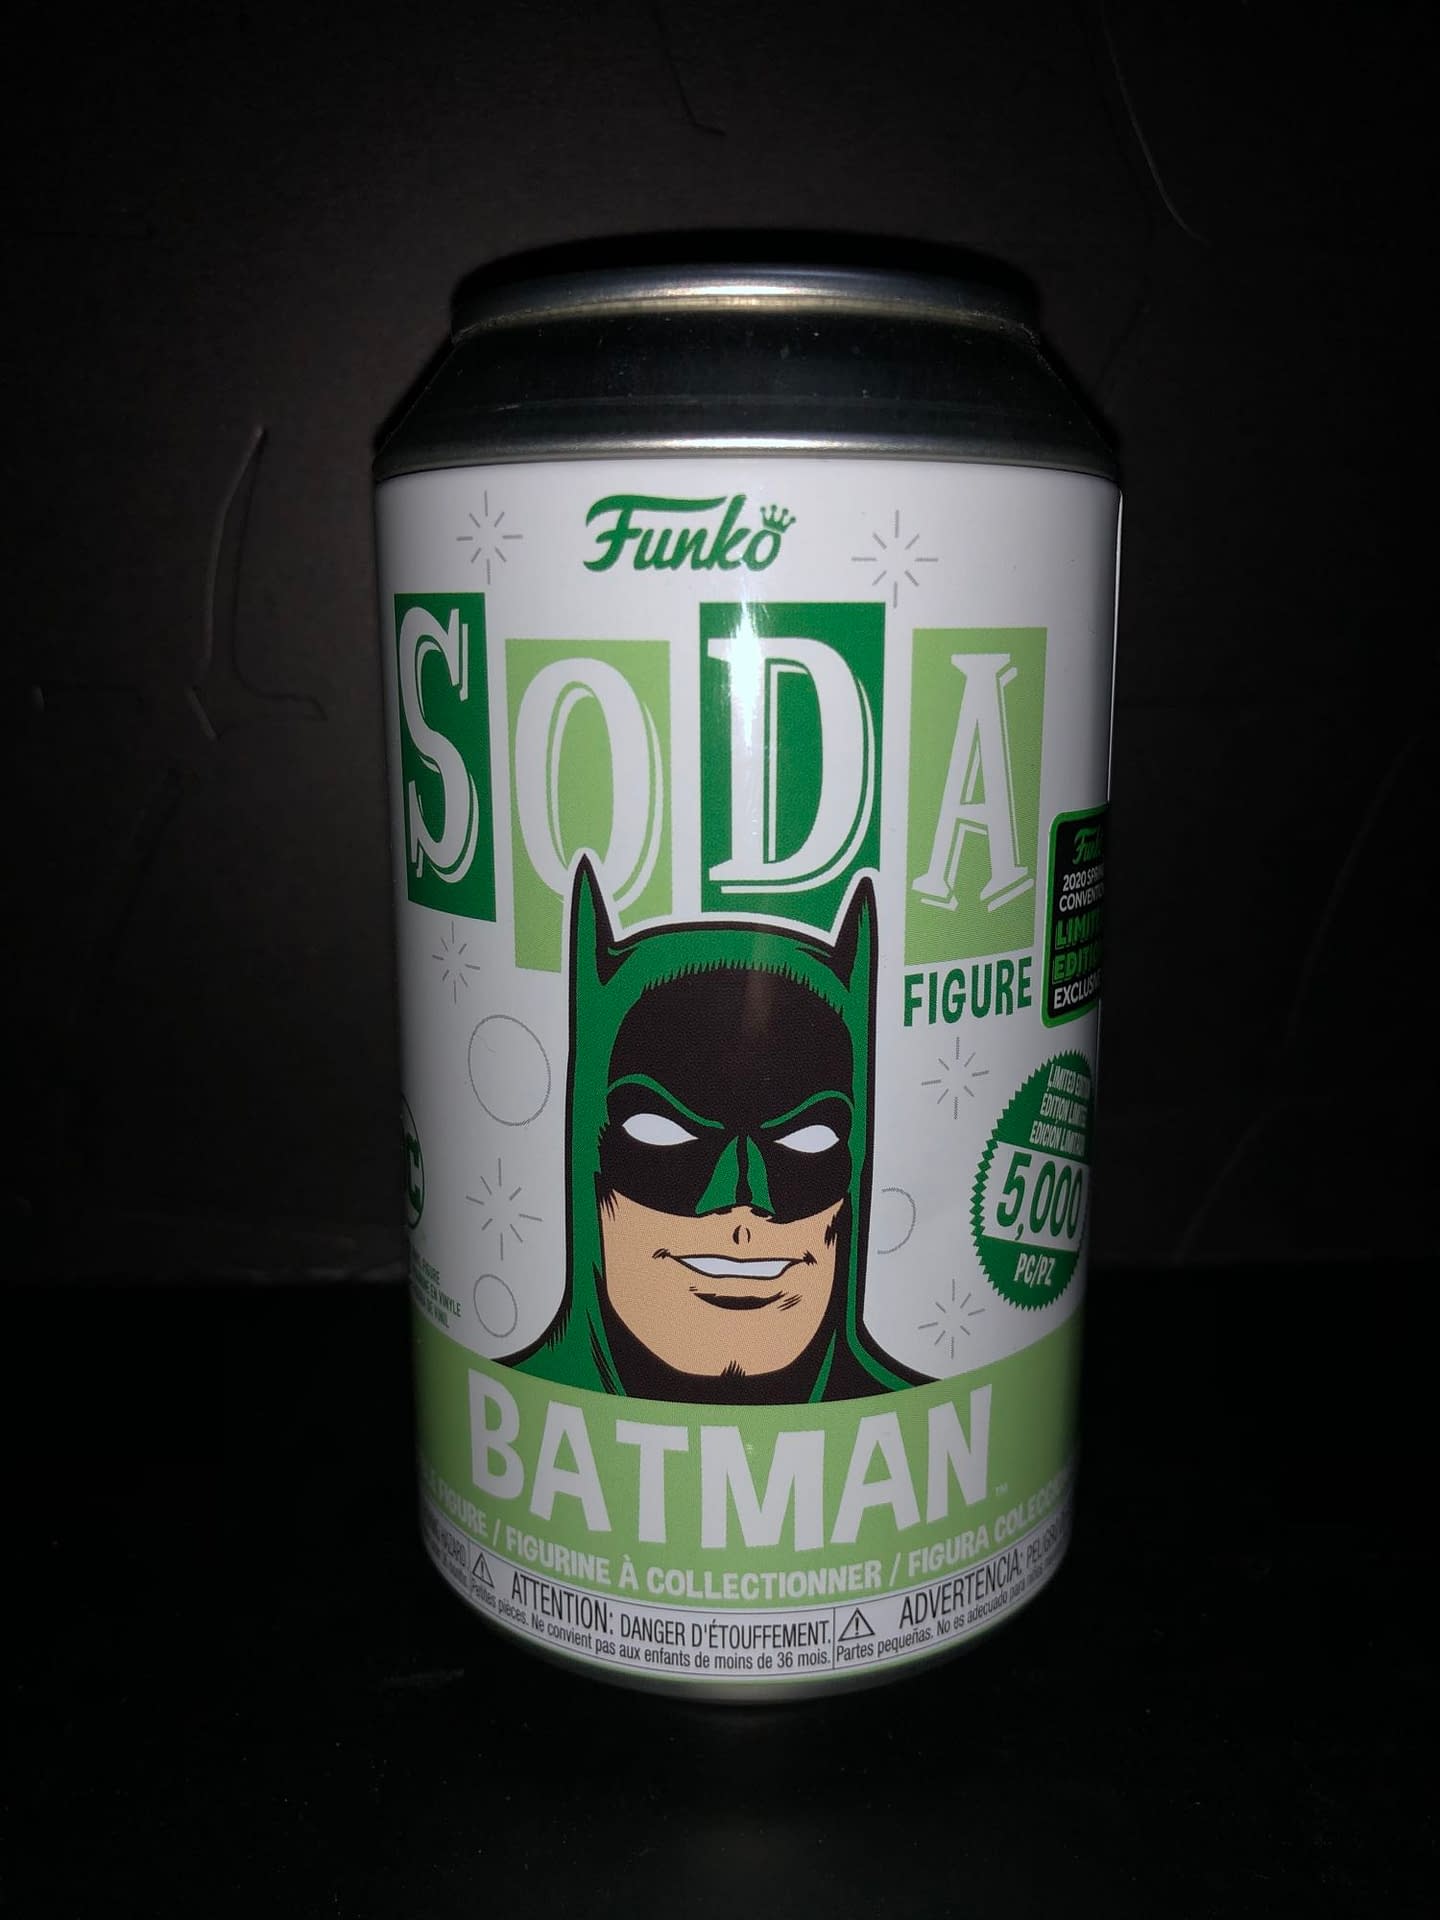 Funko Soda Vinyl Figure Emerald City Comic Con Exclusive Green Batman Figure.